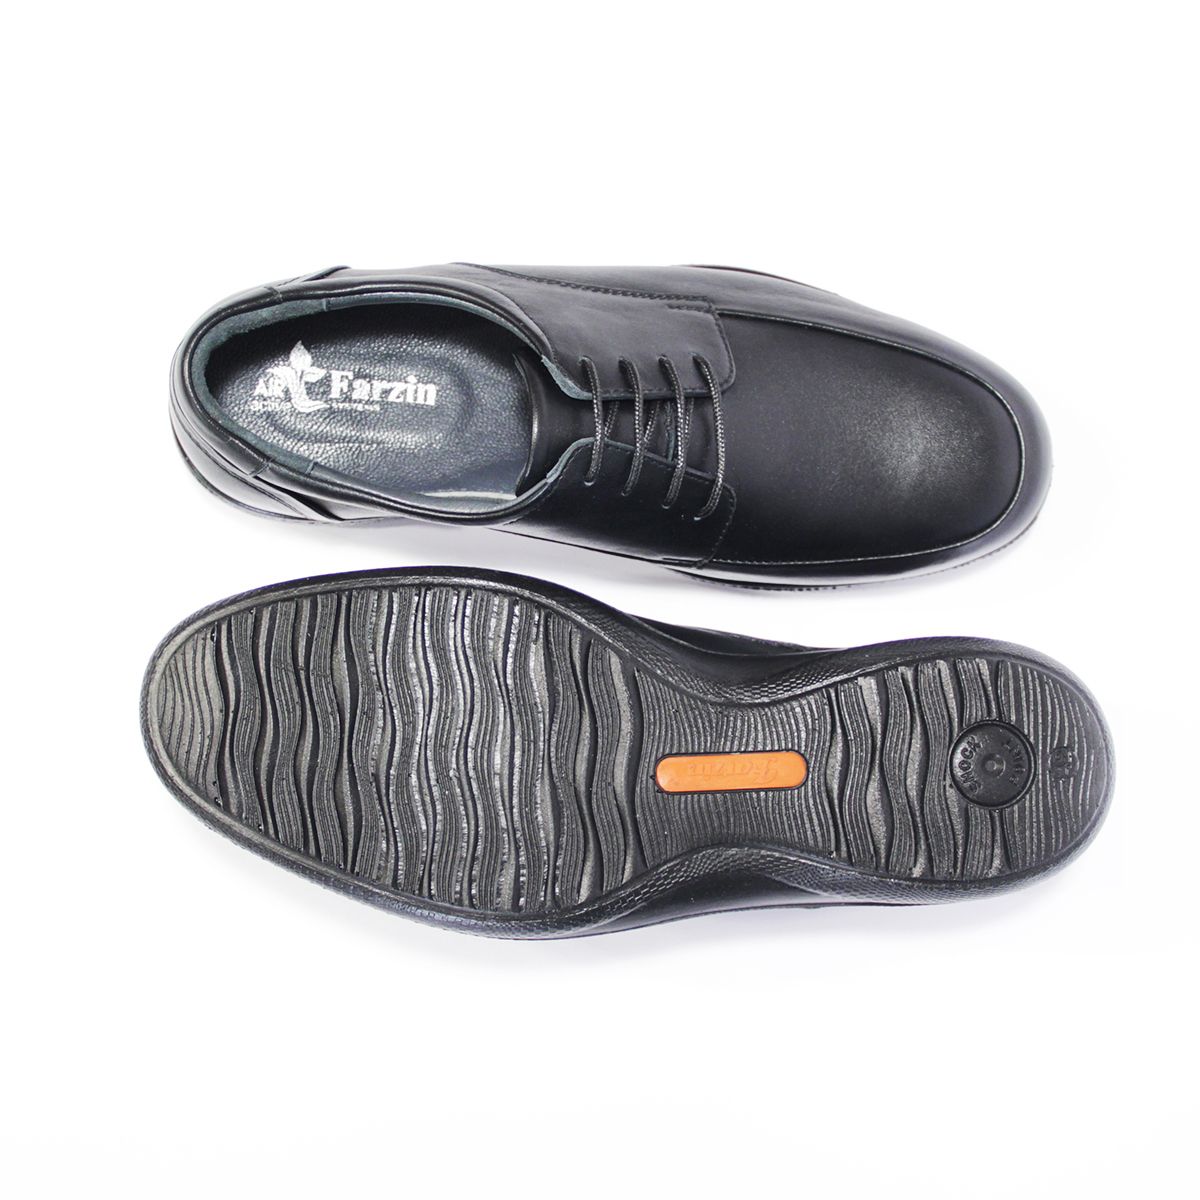 کفش روزمره مردانه فرزین کد TBM 022 رنگ مشکی -  - 2